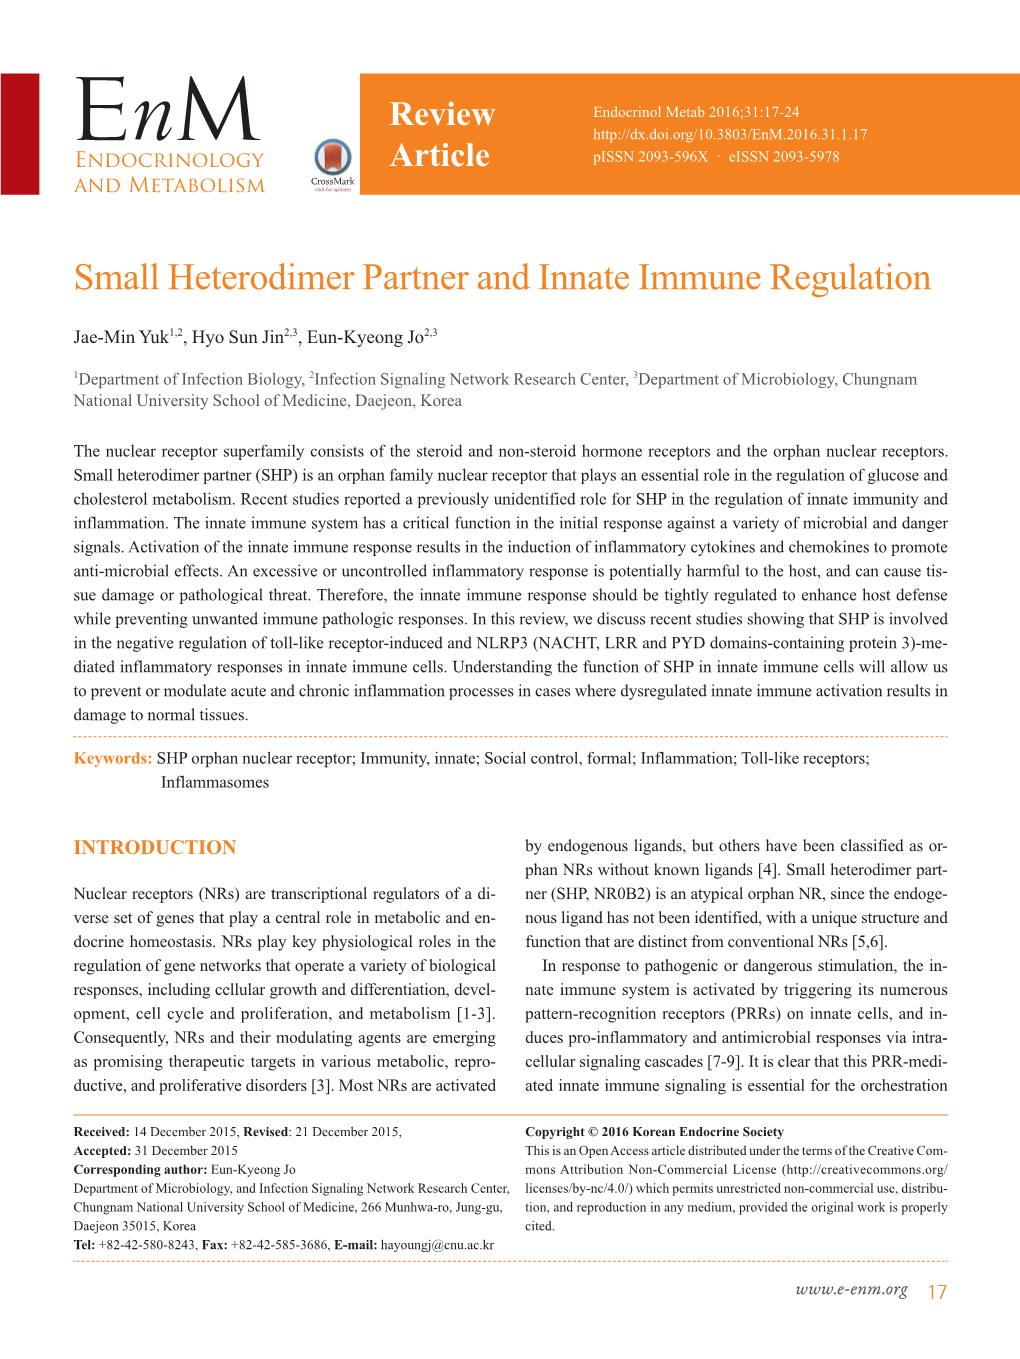 Small Heterodimer Partner and Innate Immune Regulation